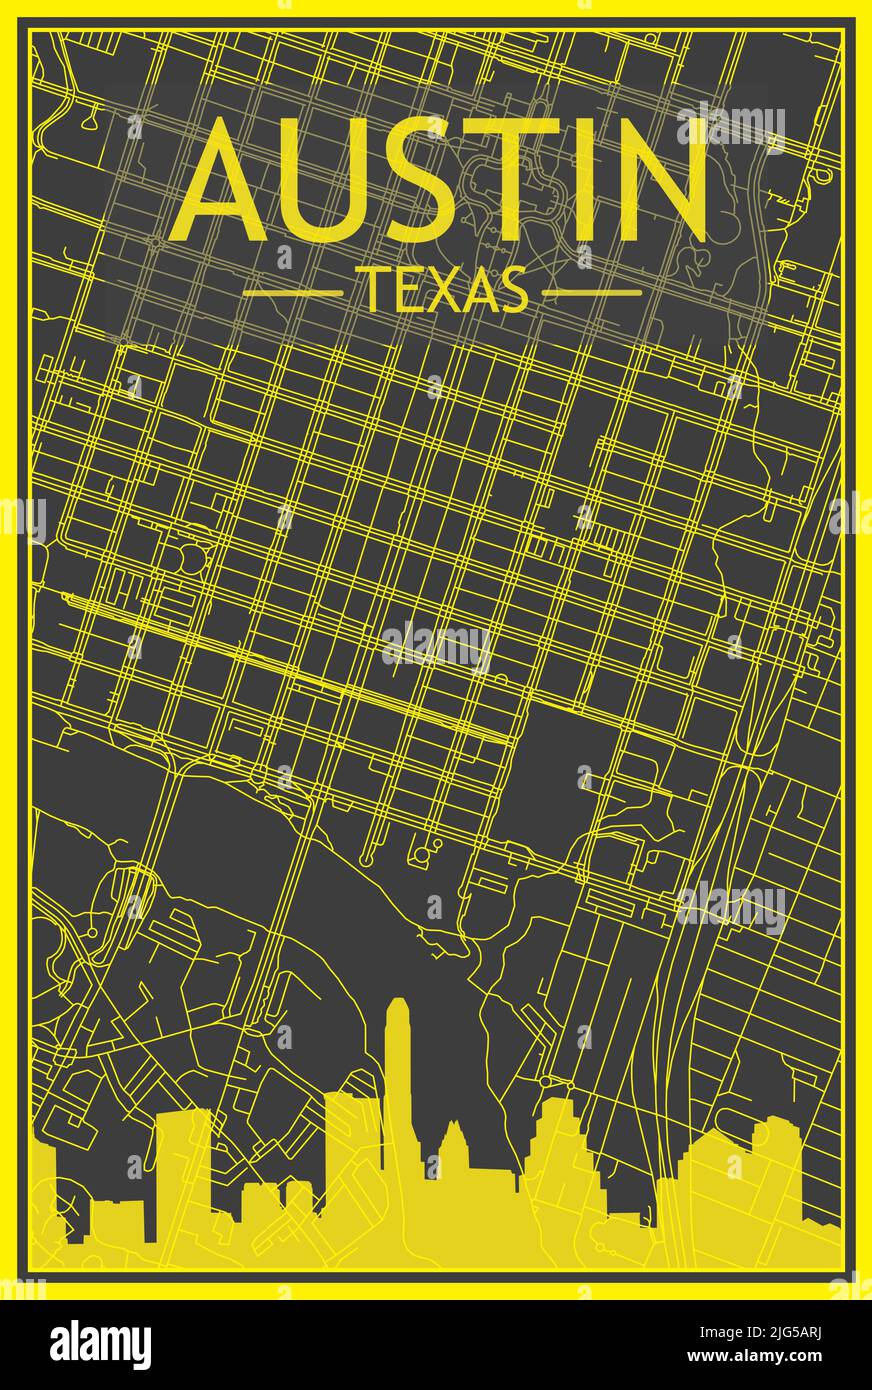 Affiche de ville imprimée en jaune avec vue panoramique sur les gratte-ciel et les rues sur fond gris foncé du centre-ville D'AUSTIN, TEXAS Illustration de Vecteur